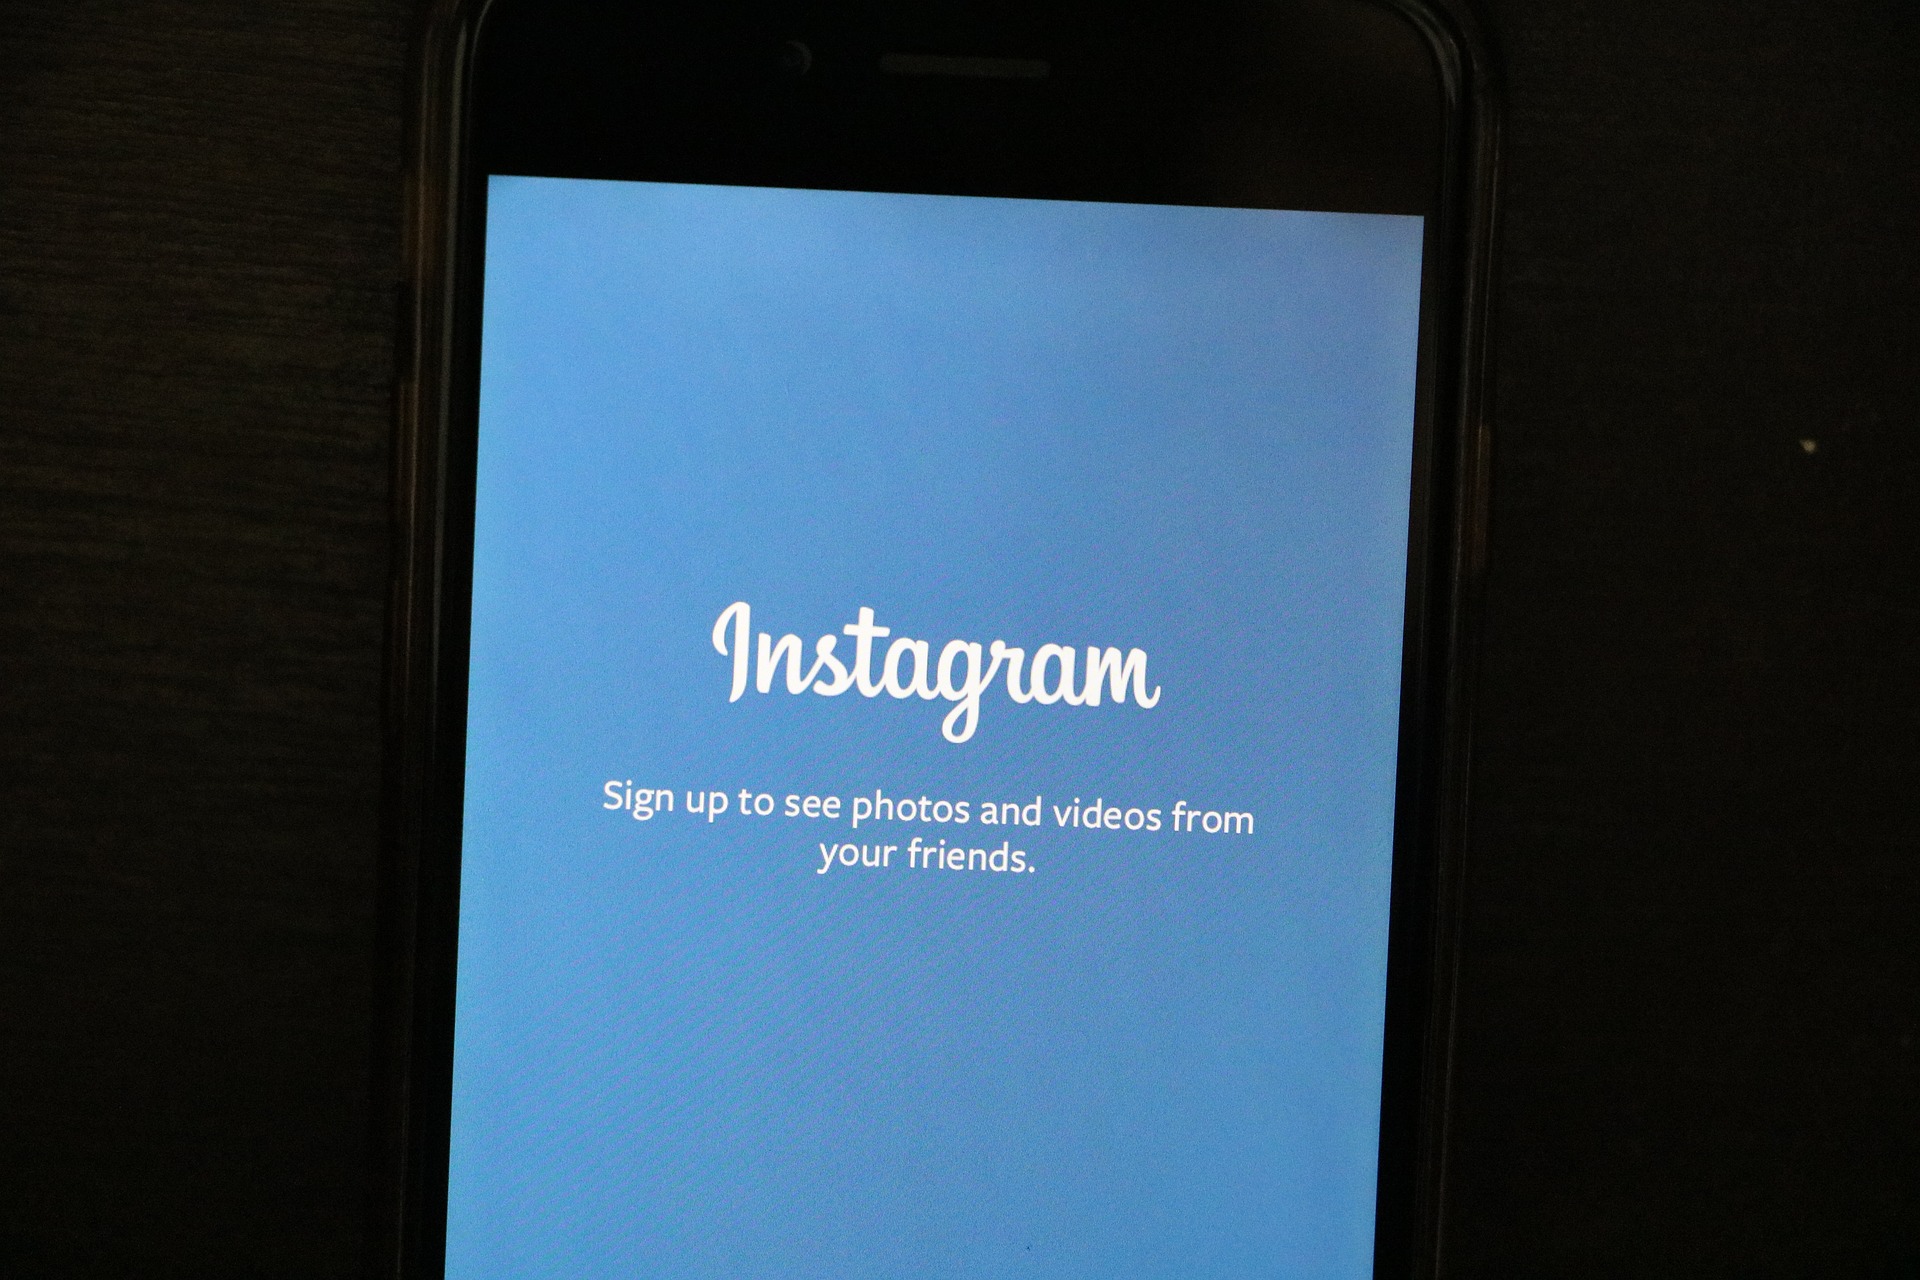 Sasaran Empuk Bagi Bisnis Startup Di Instagram Dailysocial